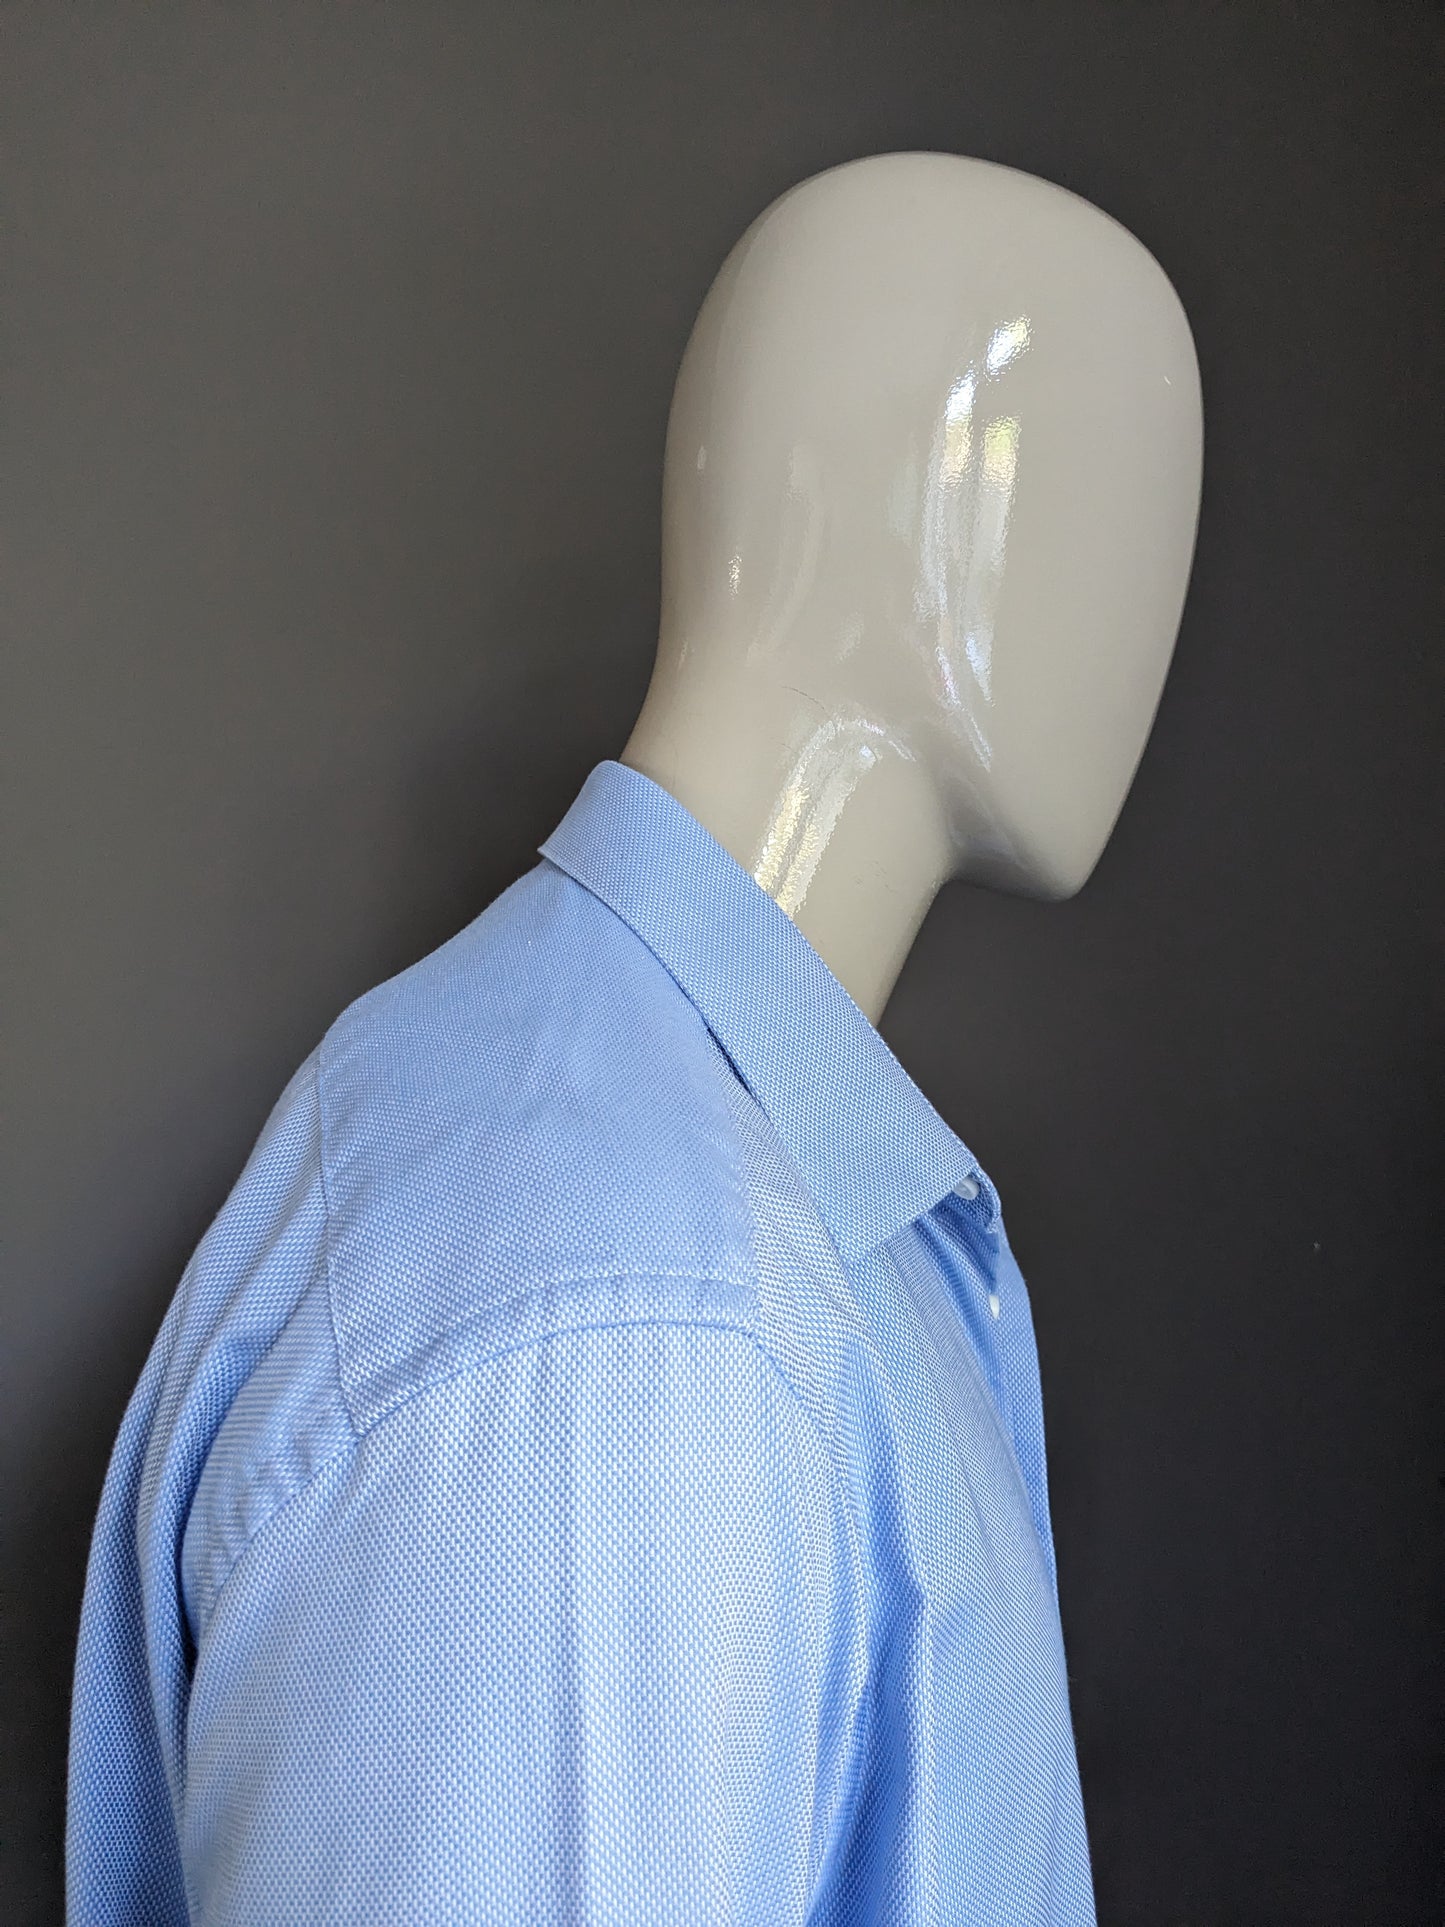 Autograph shirt. Blue white motif. Size 47 / 2XL-XXL. Tailored fit.